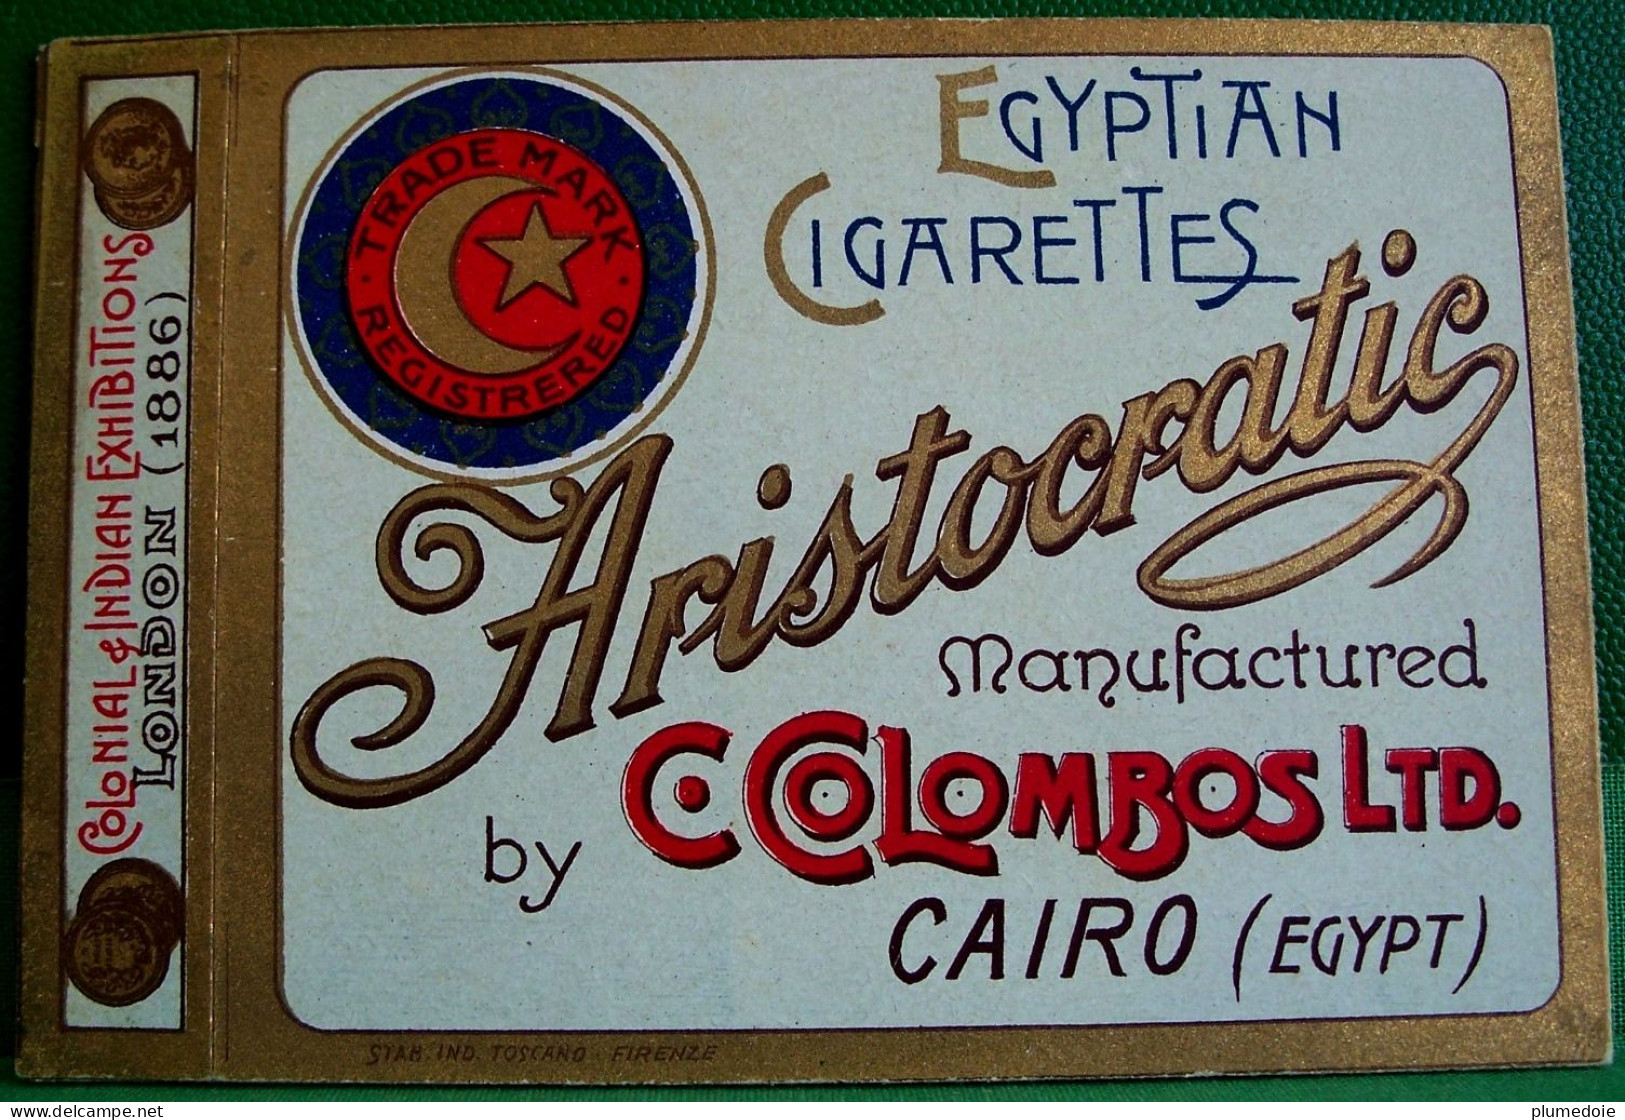 ETUI Couverture  De PAQUET De CIGARETTES VIDE  ARISTOCRATIC  , Ca 1920 , COVER OF OLD EMPTY BOX , C.COLOMBOS Ltd - Etuis à Cigarettes Vides